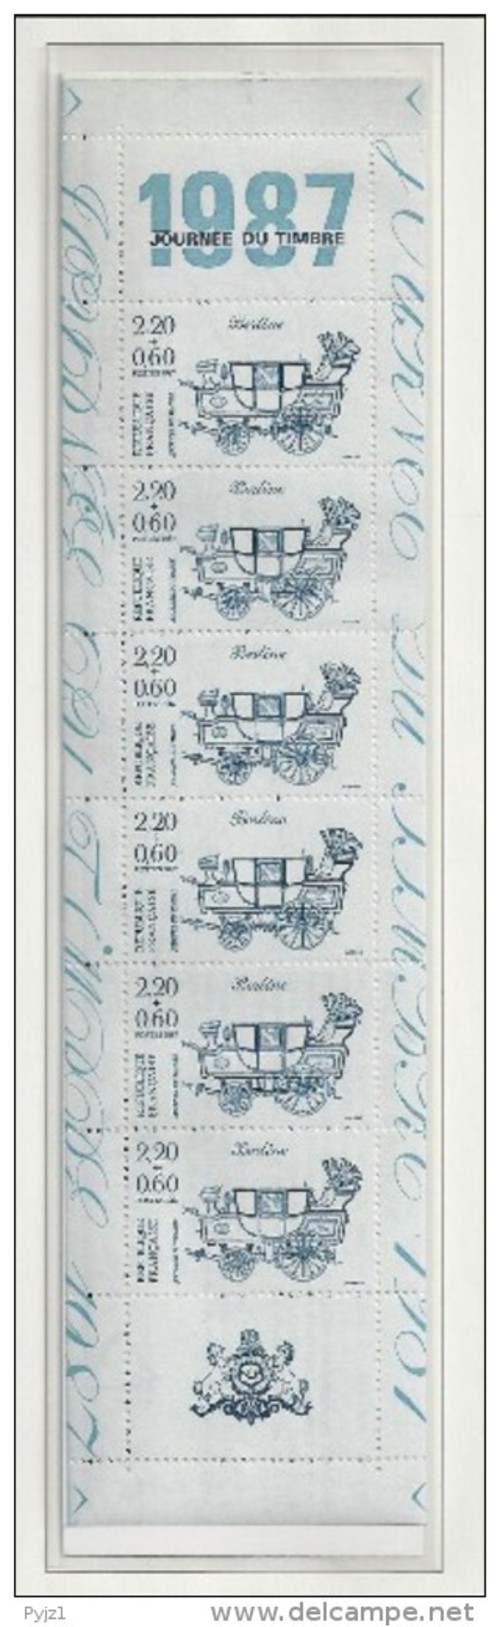 1987  MNH France Carnet/booklet, Postfris - Tag Der Briefmarke